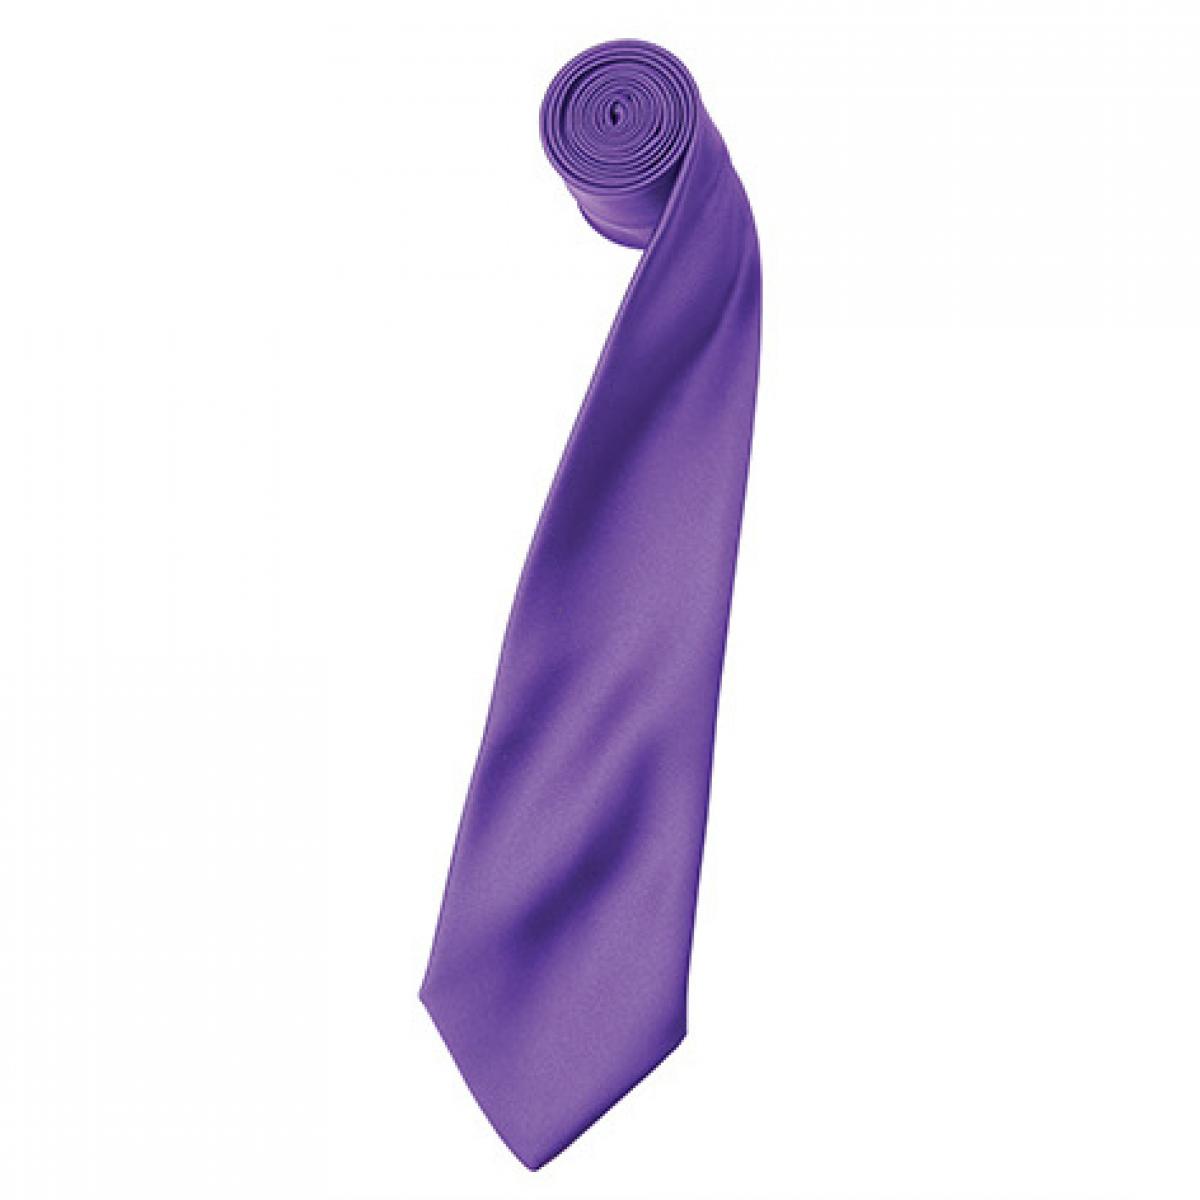 Hersteller: Premier Workwear Herstellernummer: PR750 Artikelbezeichnung: Satin Tie ´Colours´ / 144 x 8,5 cm Farbe: Rich Violet (ca. Pantone 2587)